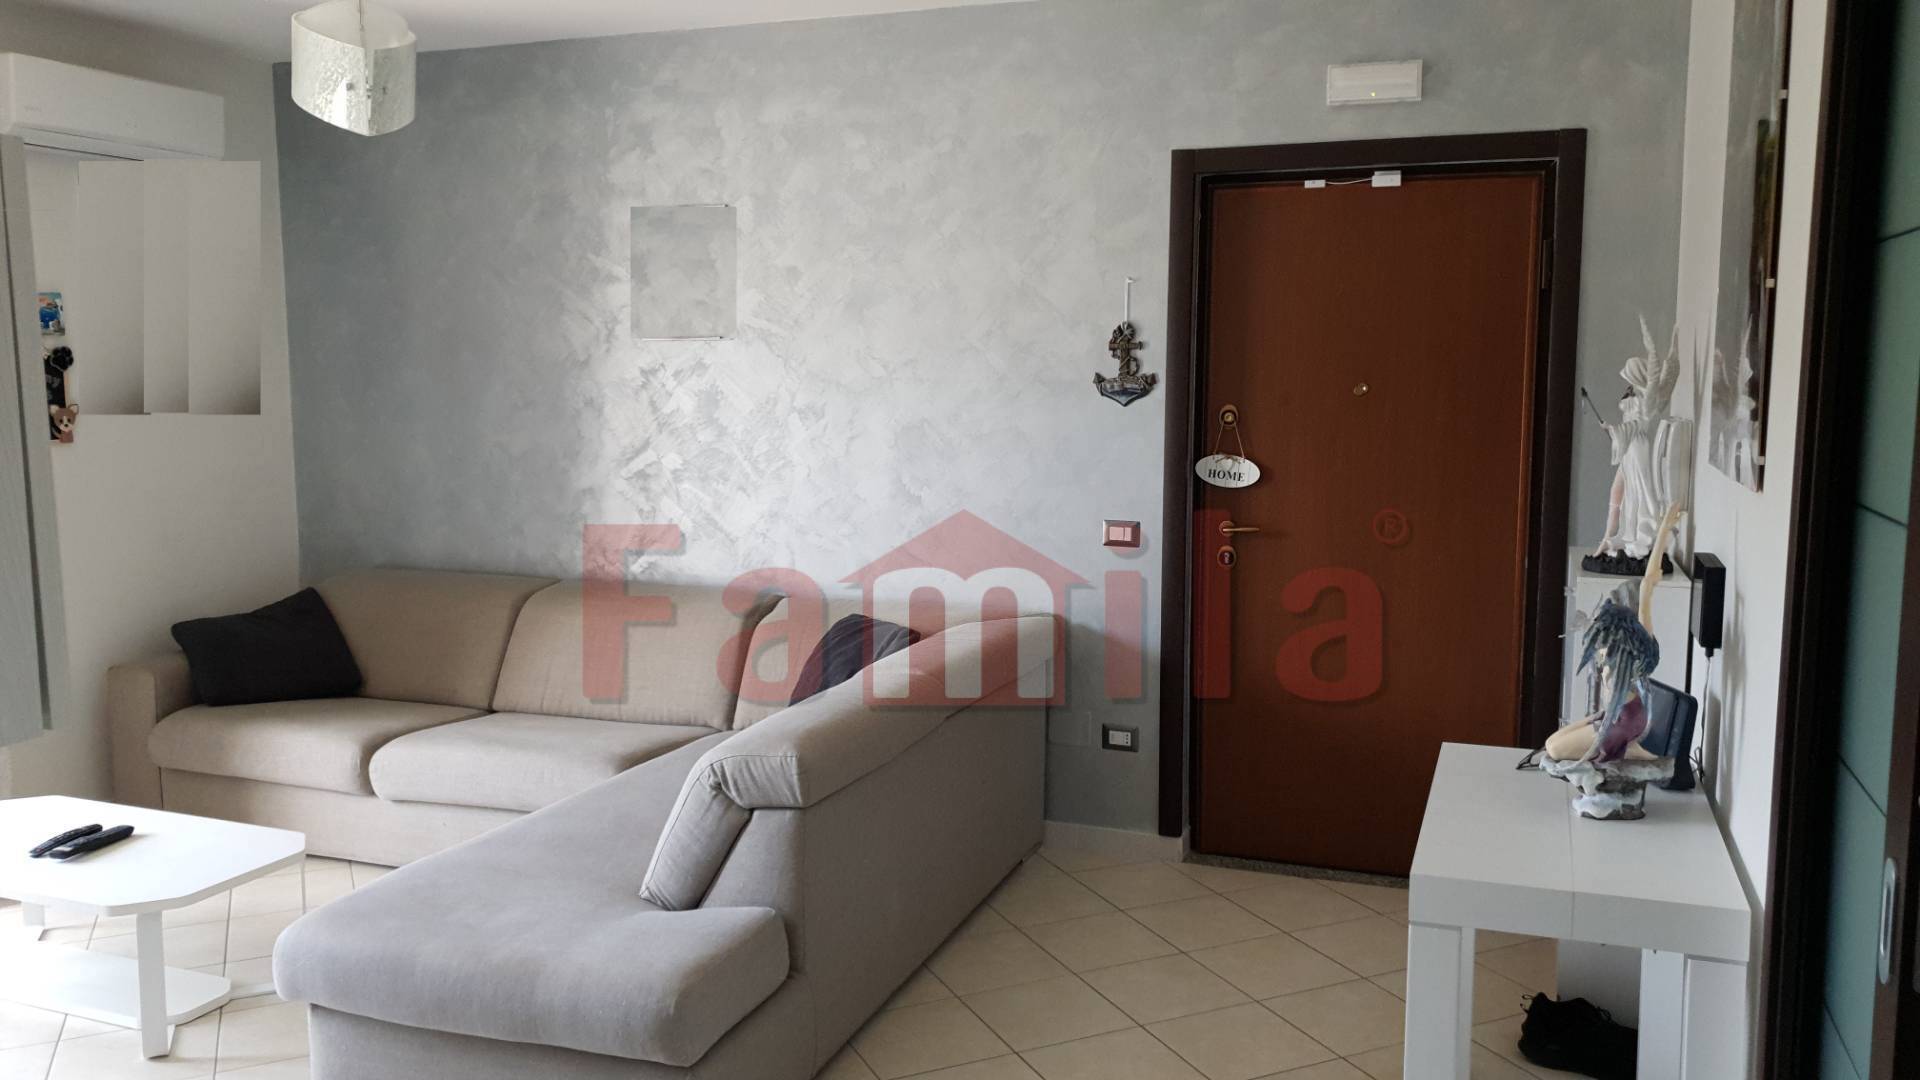 Appartamento in vendita a Sirignano, 4 locali, prezzo € 130.000 | CambioCasa.it